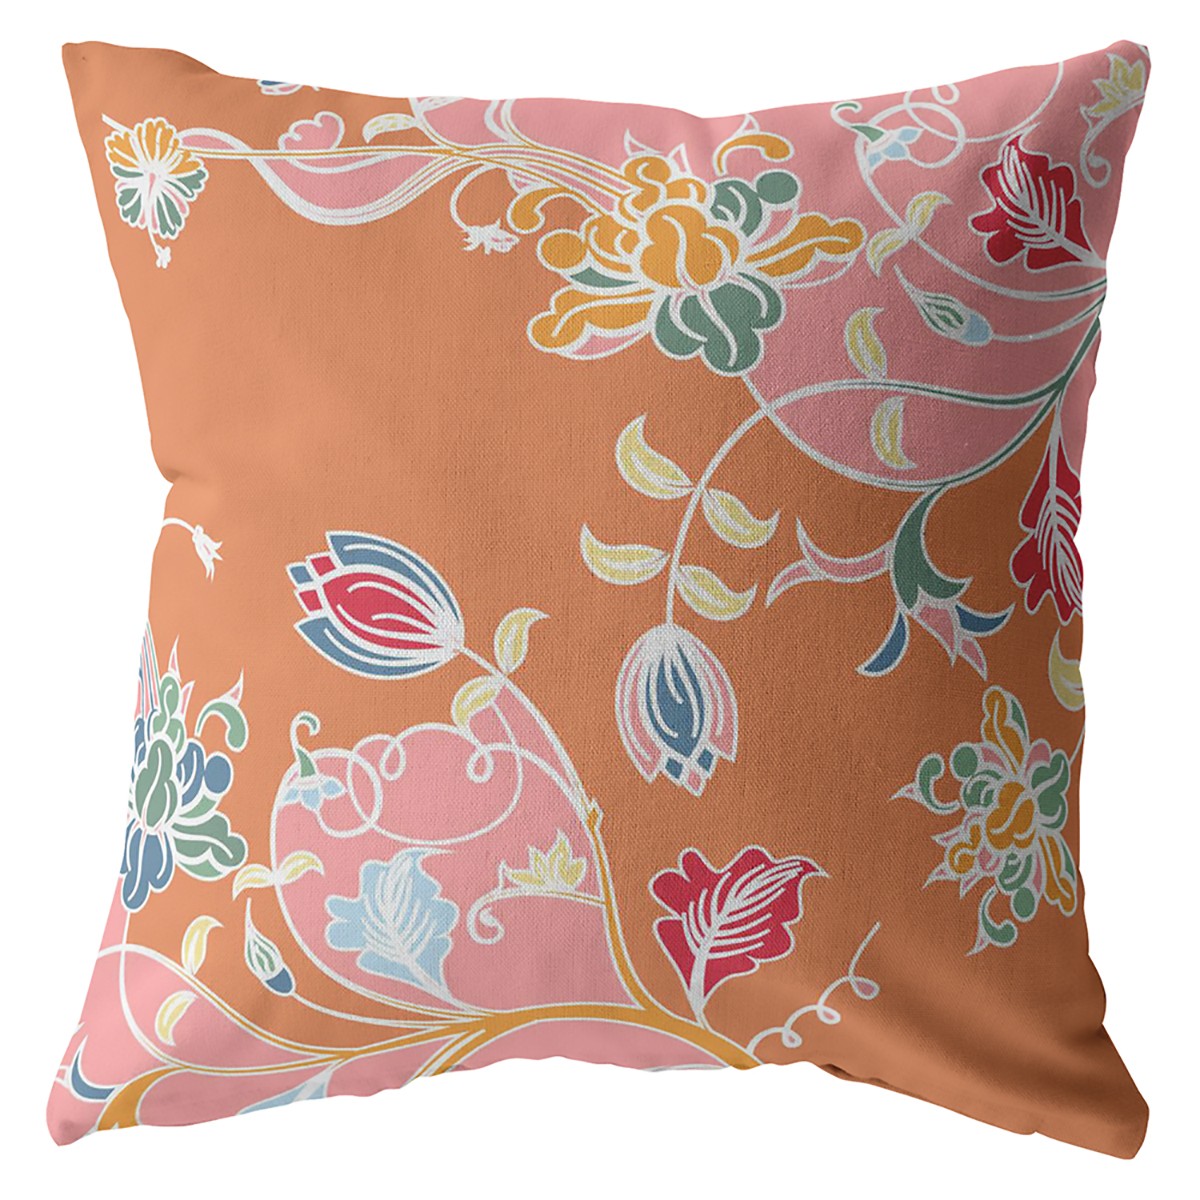 20" Pink Orange Garden Indoor Outdoor Throw Pillow-412205-1